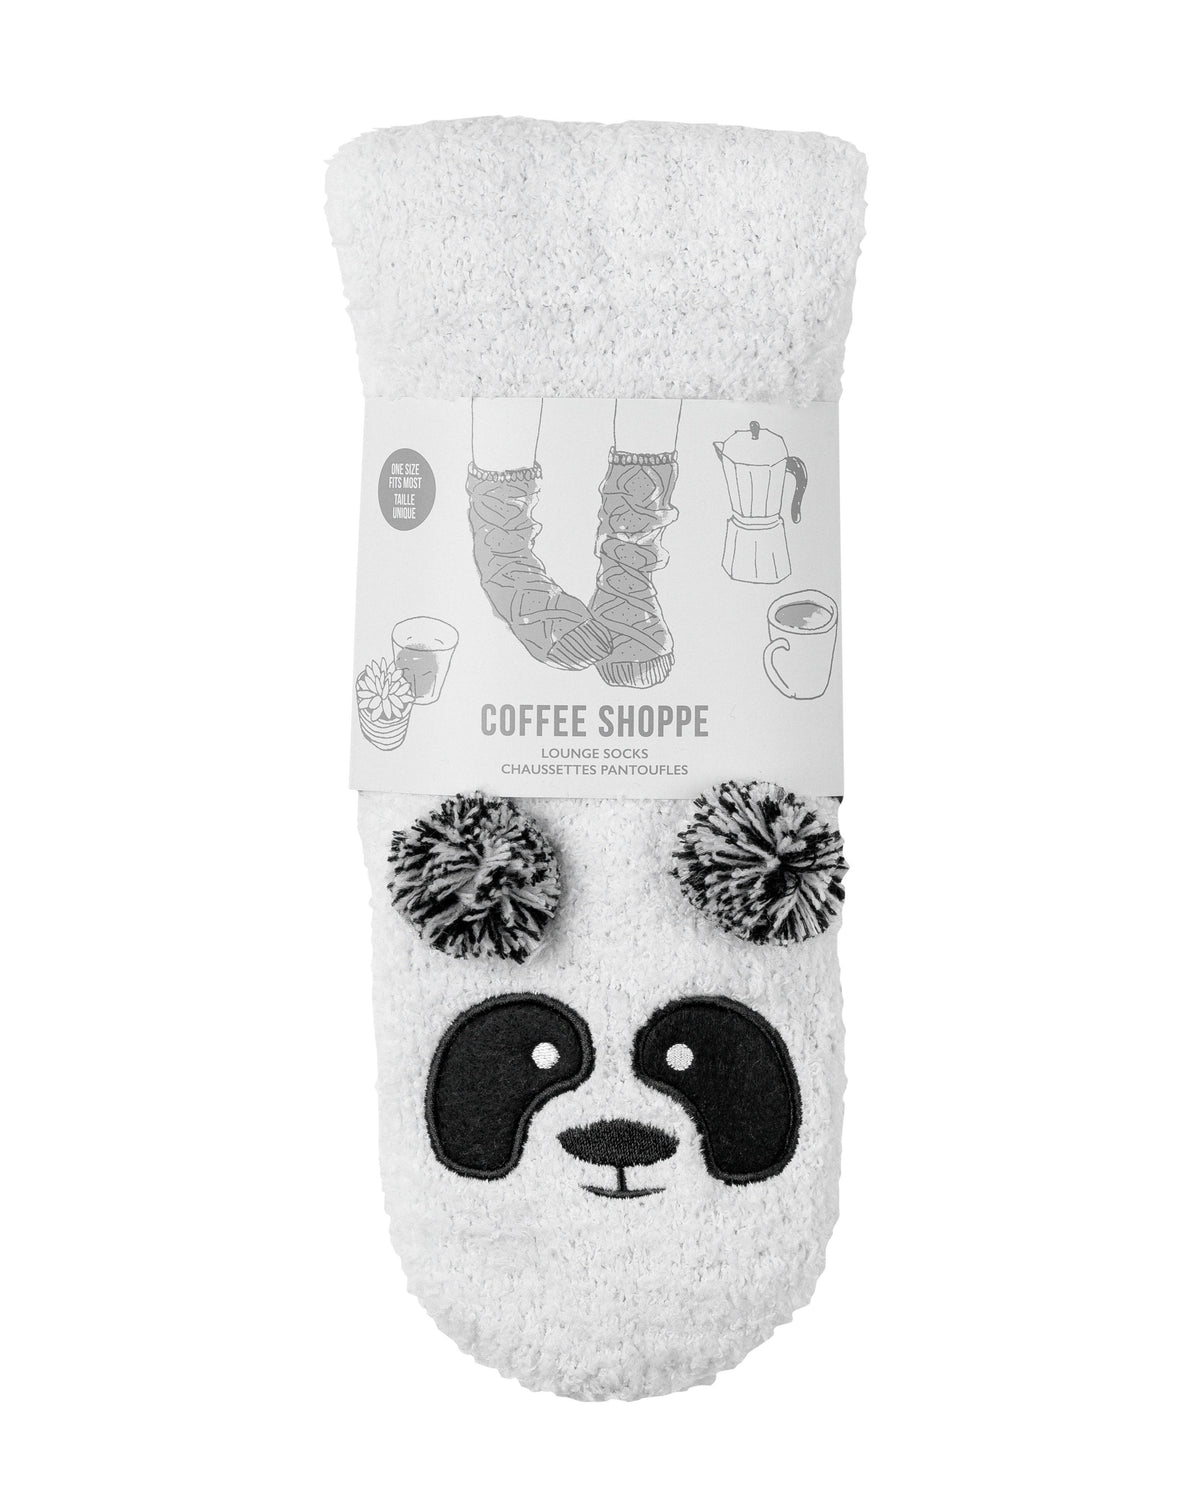 Marshmallow Critter Socks - Panda (Whisper White & Black) - LATTELOVE Co.